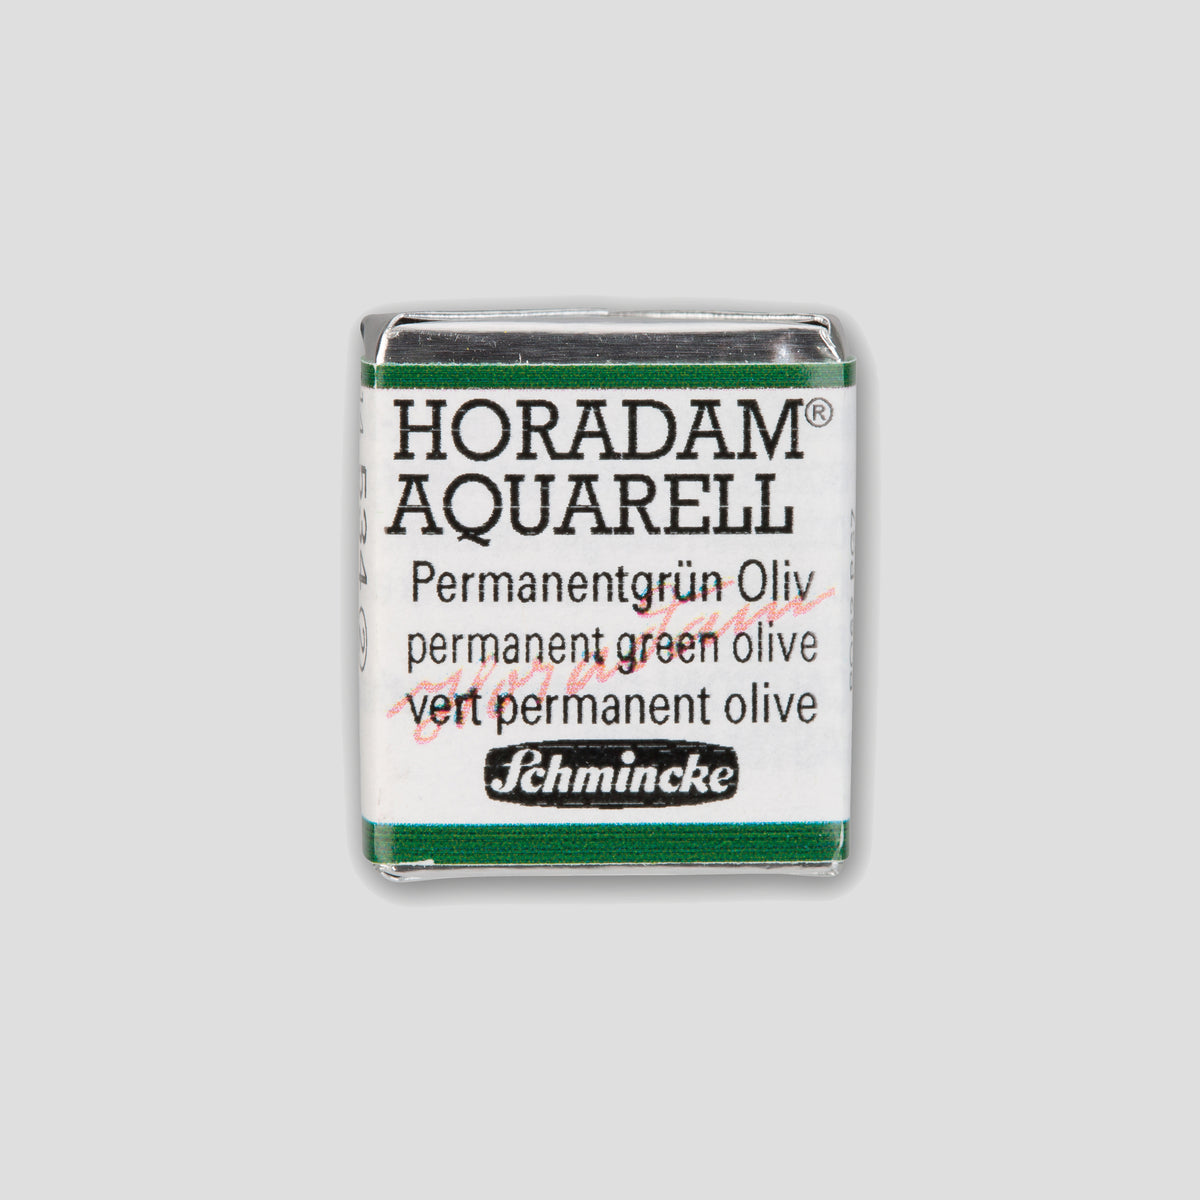 Schmincke Horadam® Half pan 534 Permanent green olive 2